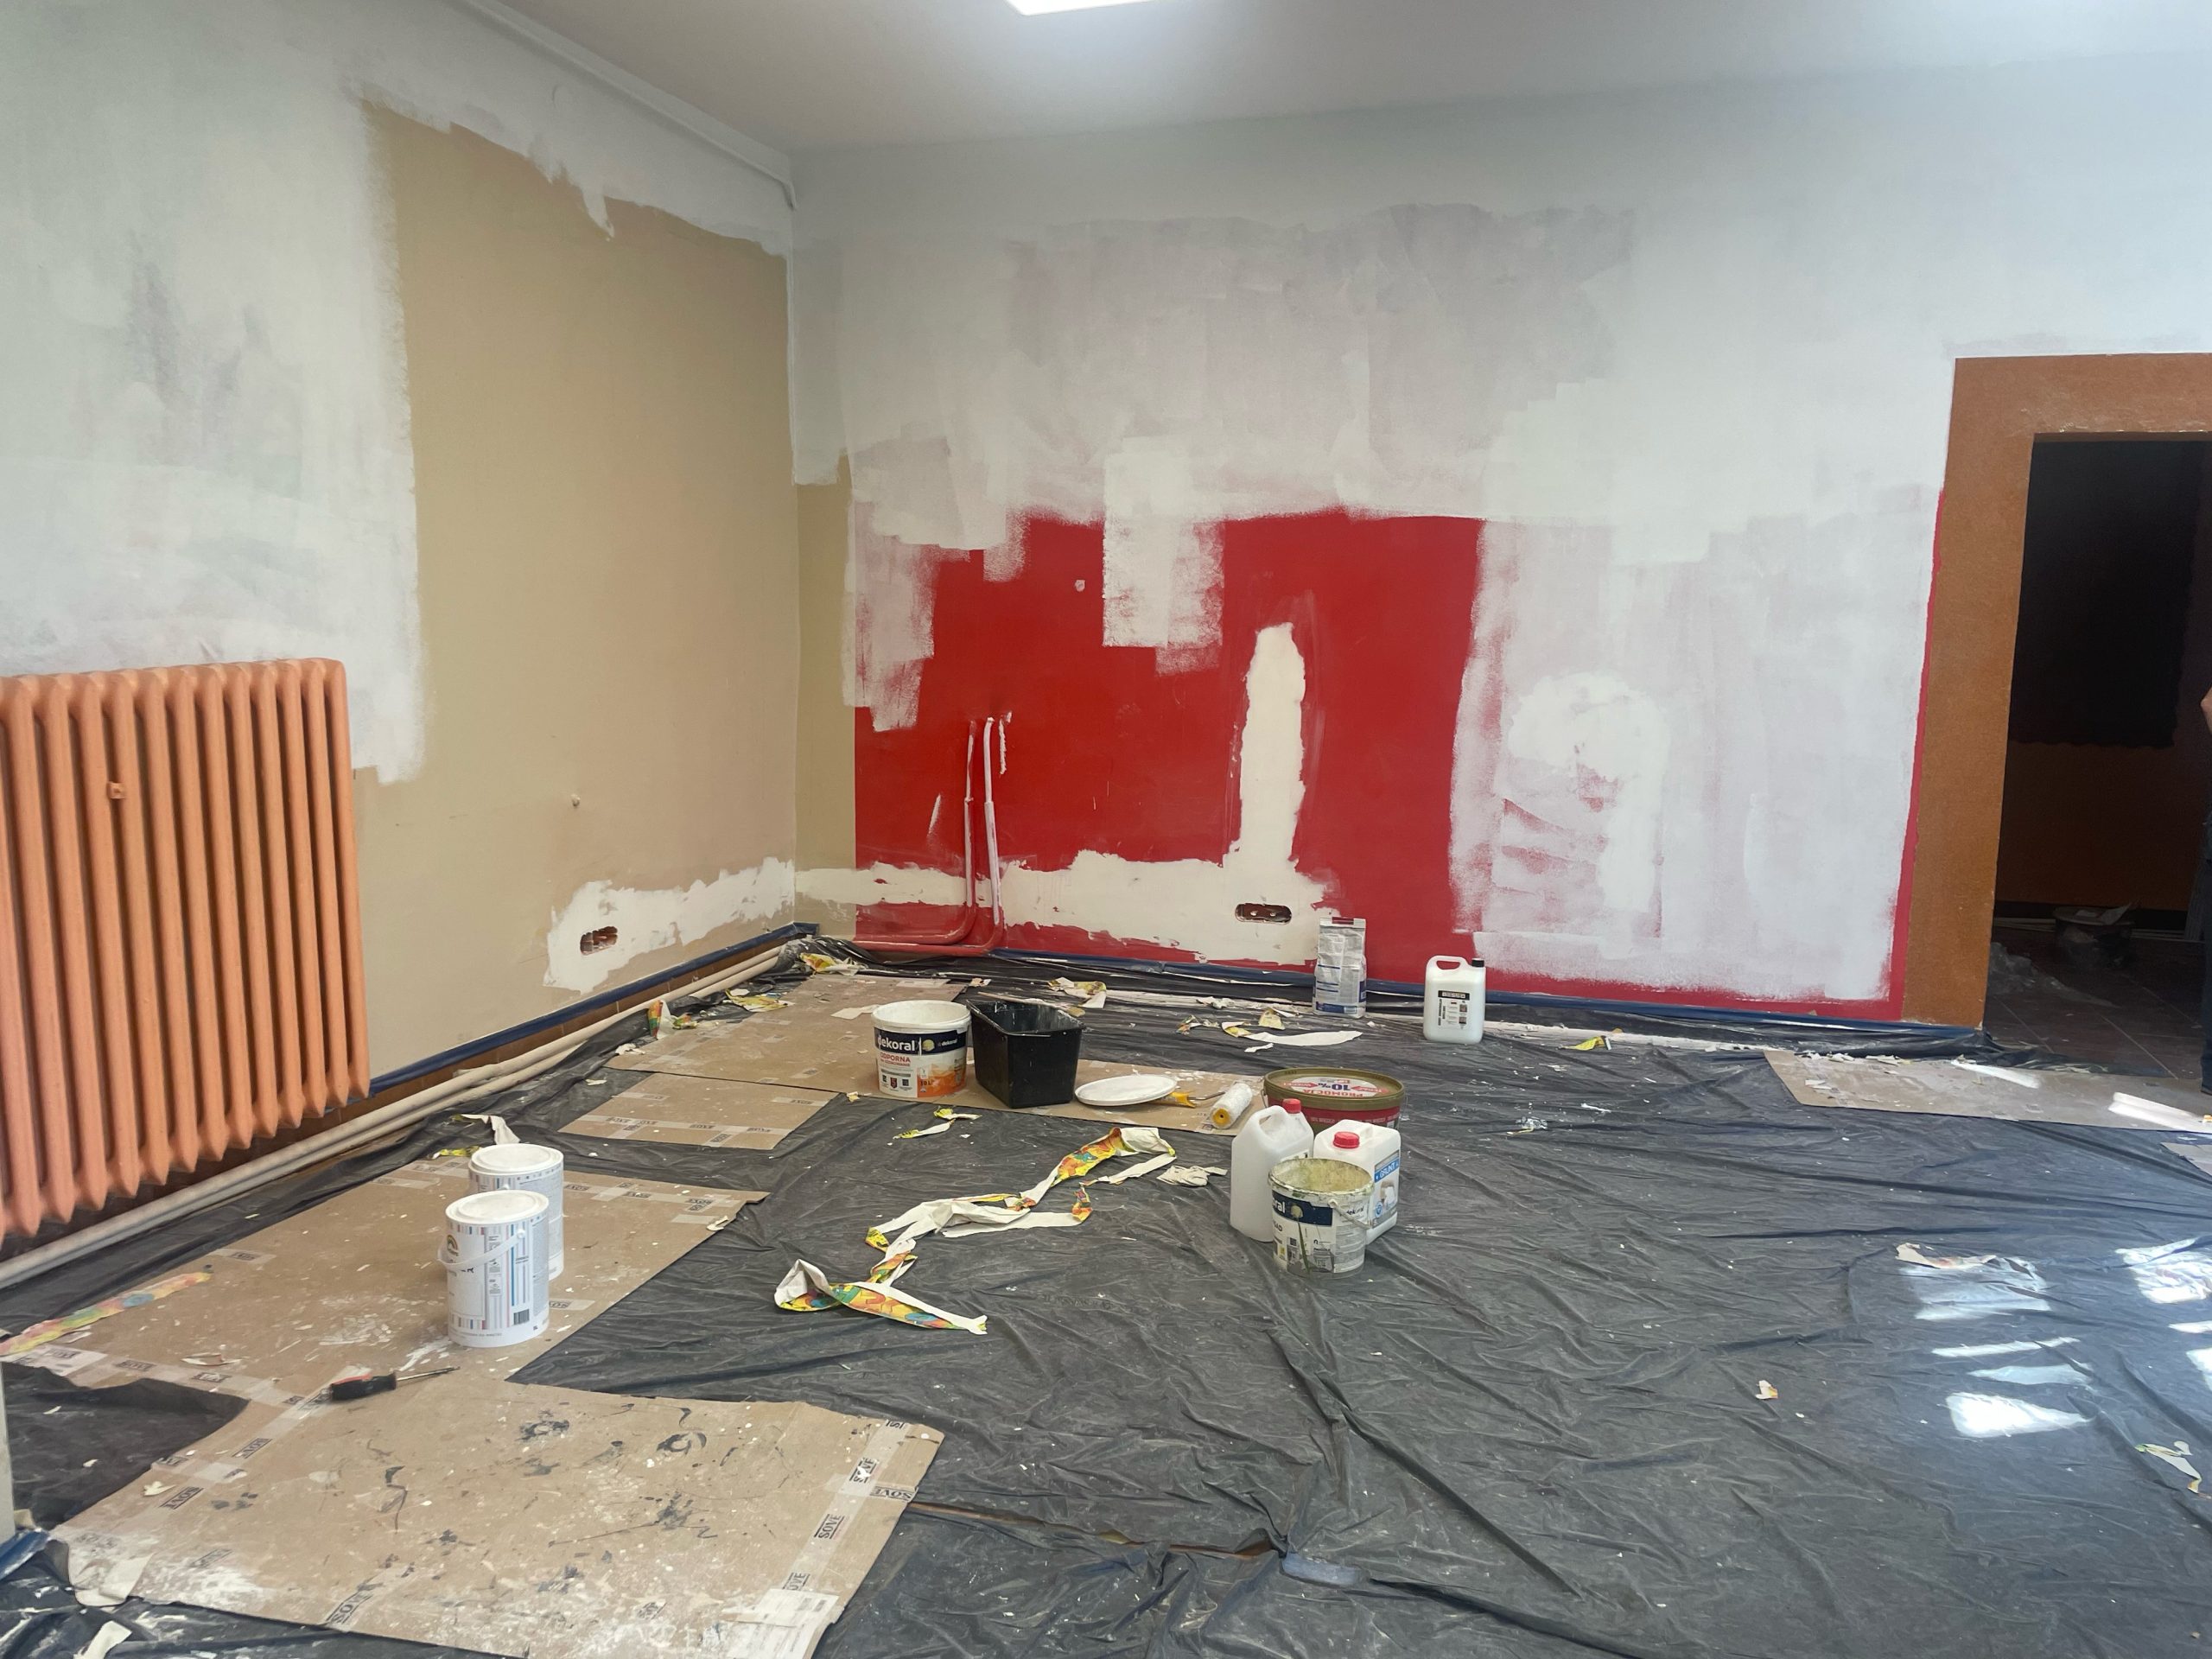 Pomieszczenie w trakcie malowania, czerwona ściana malowana na kolor biały. Na podłodze czarna folia zabezpieczająca i wiadra z farbami.